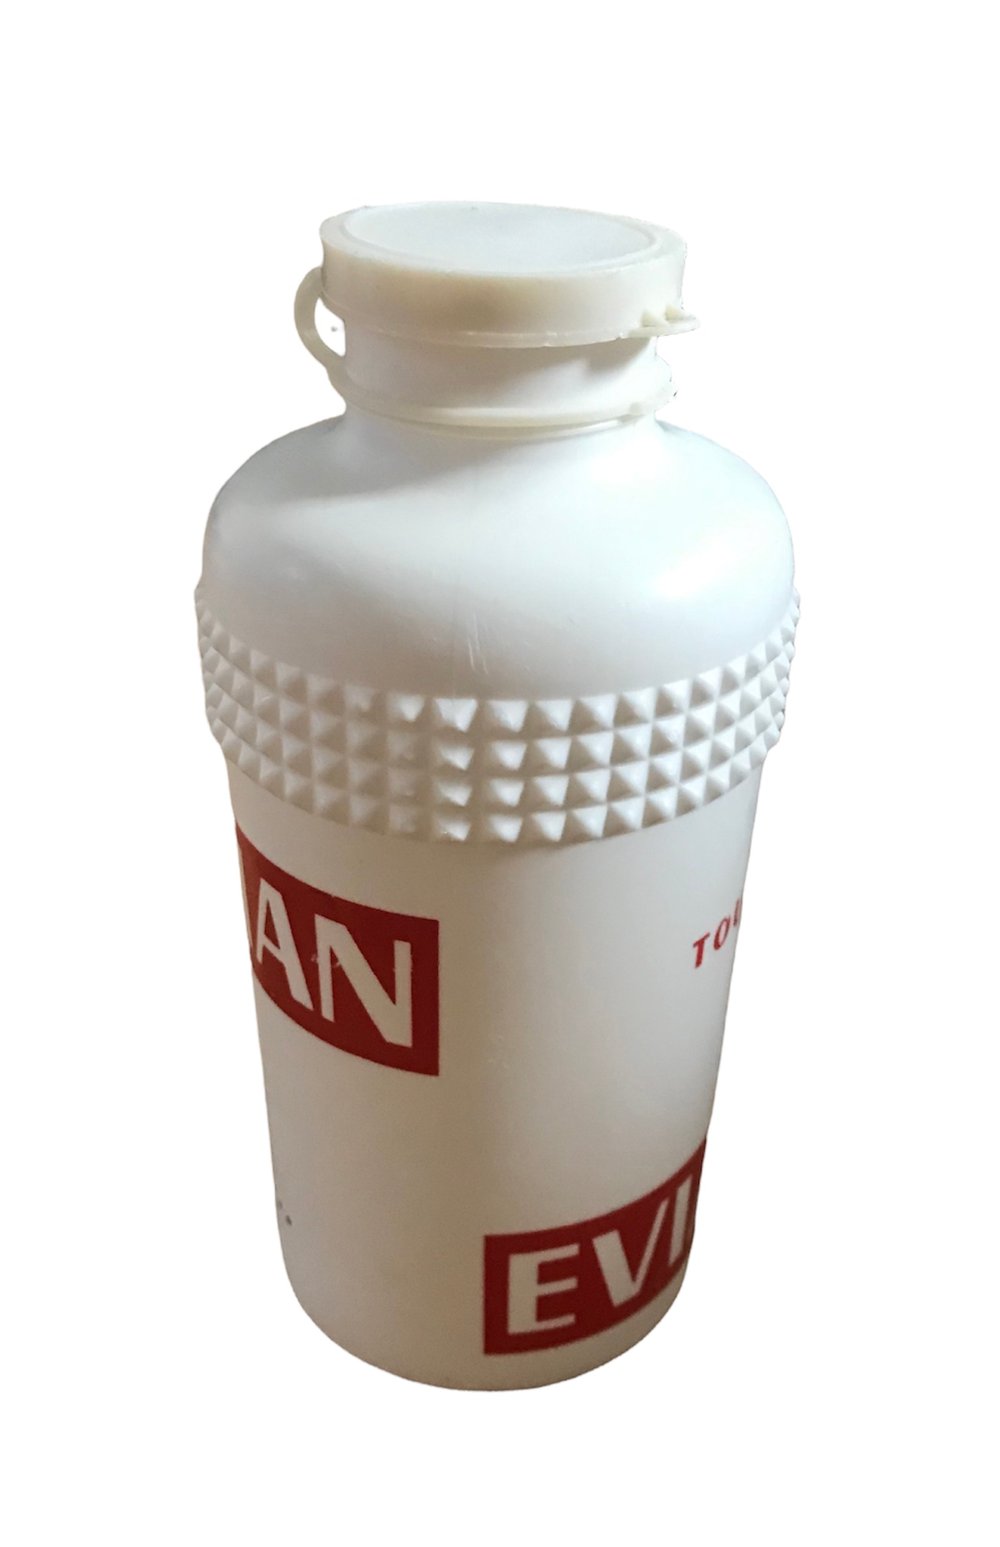 1960 - Tour de France -  Evian water bottle